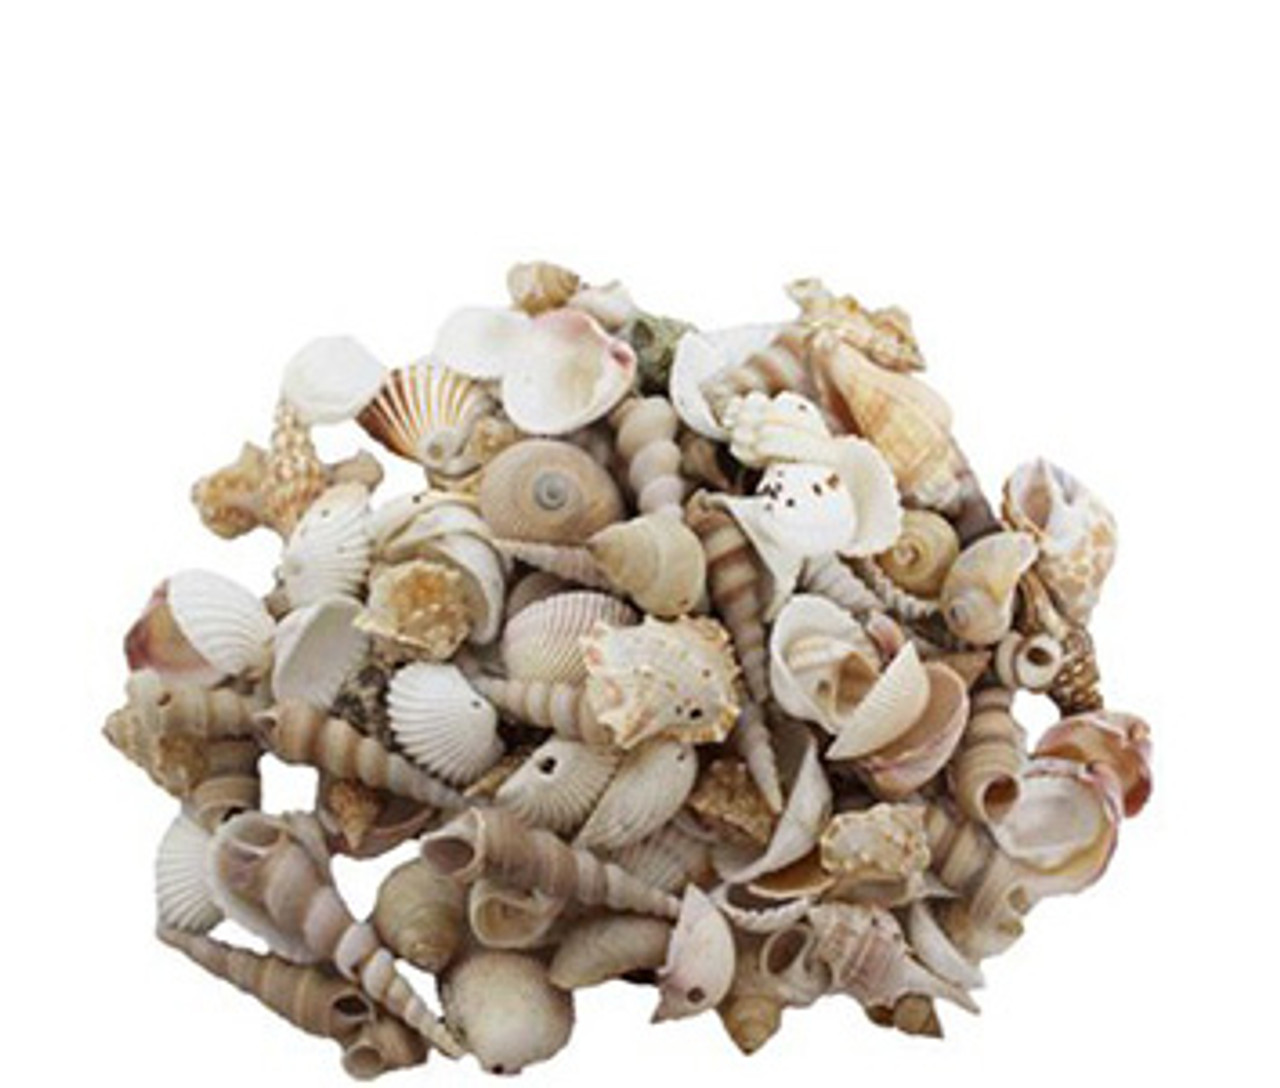 3 lbs. Large Seashells Sea Shells